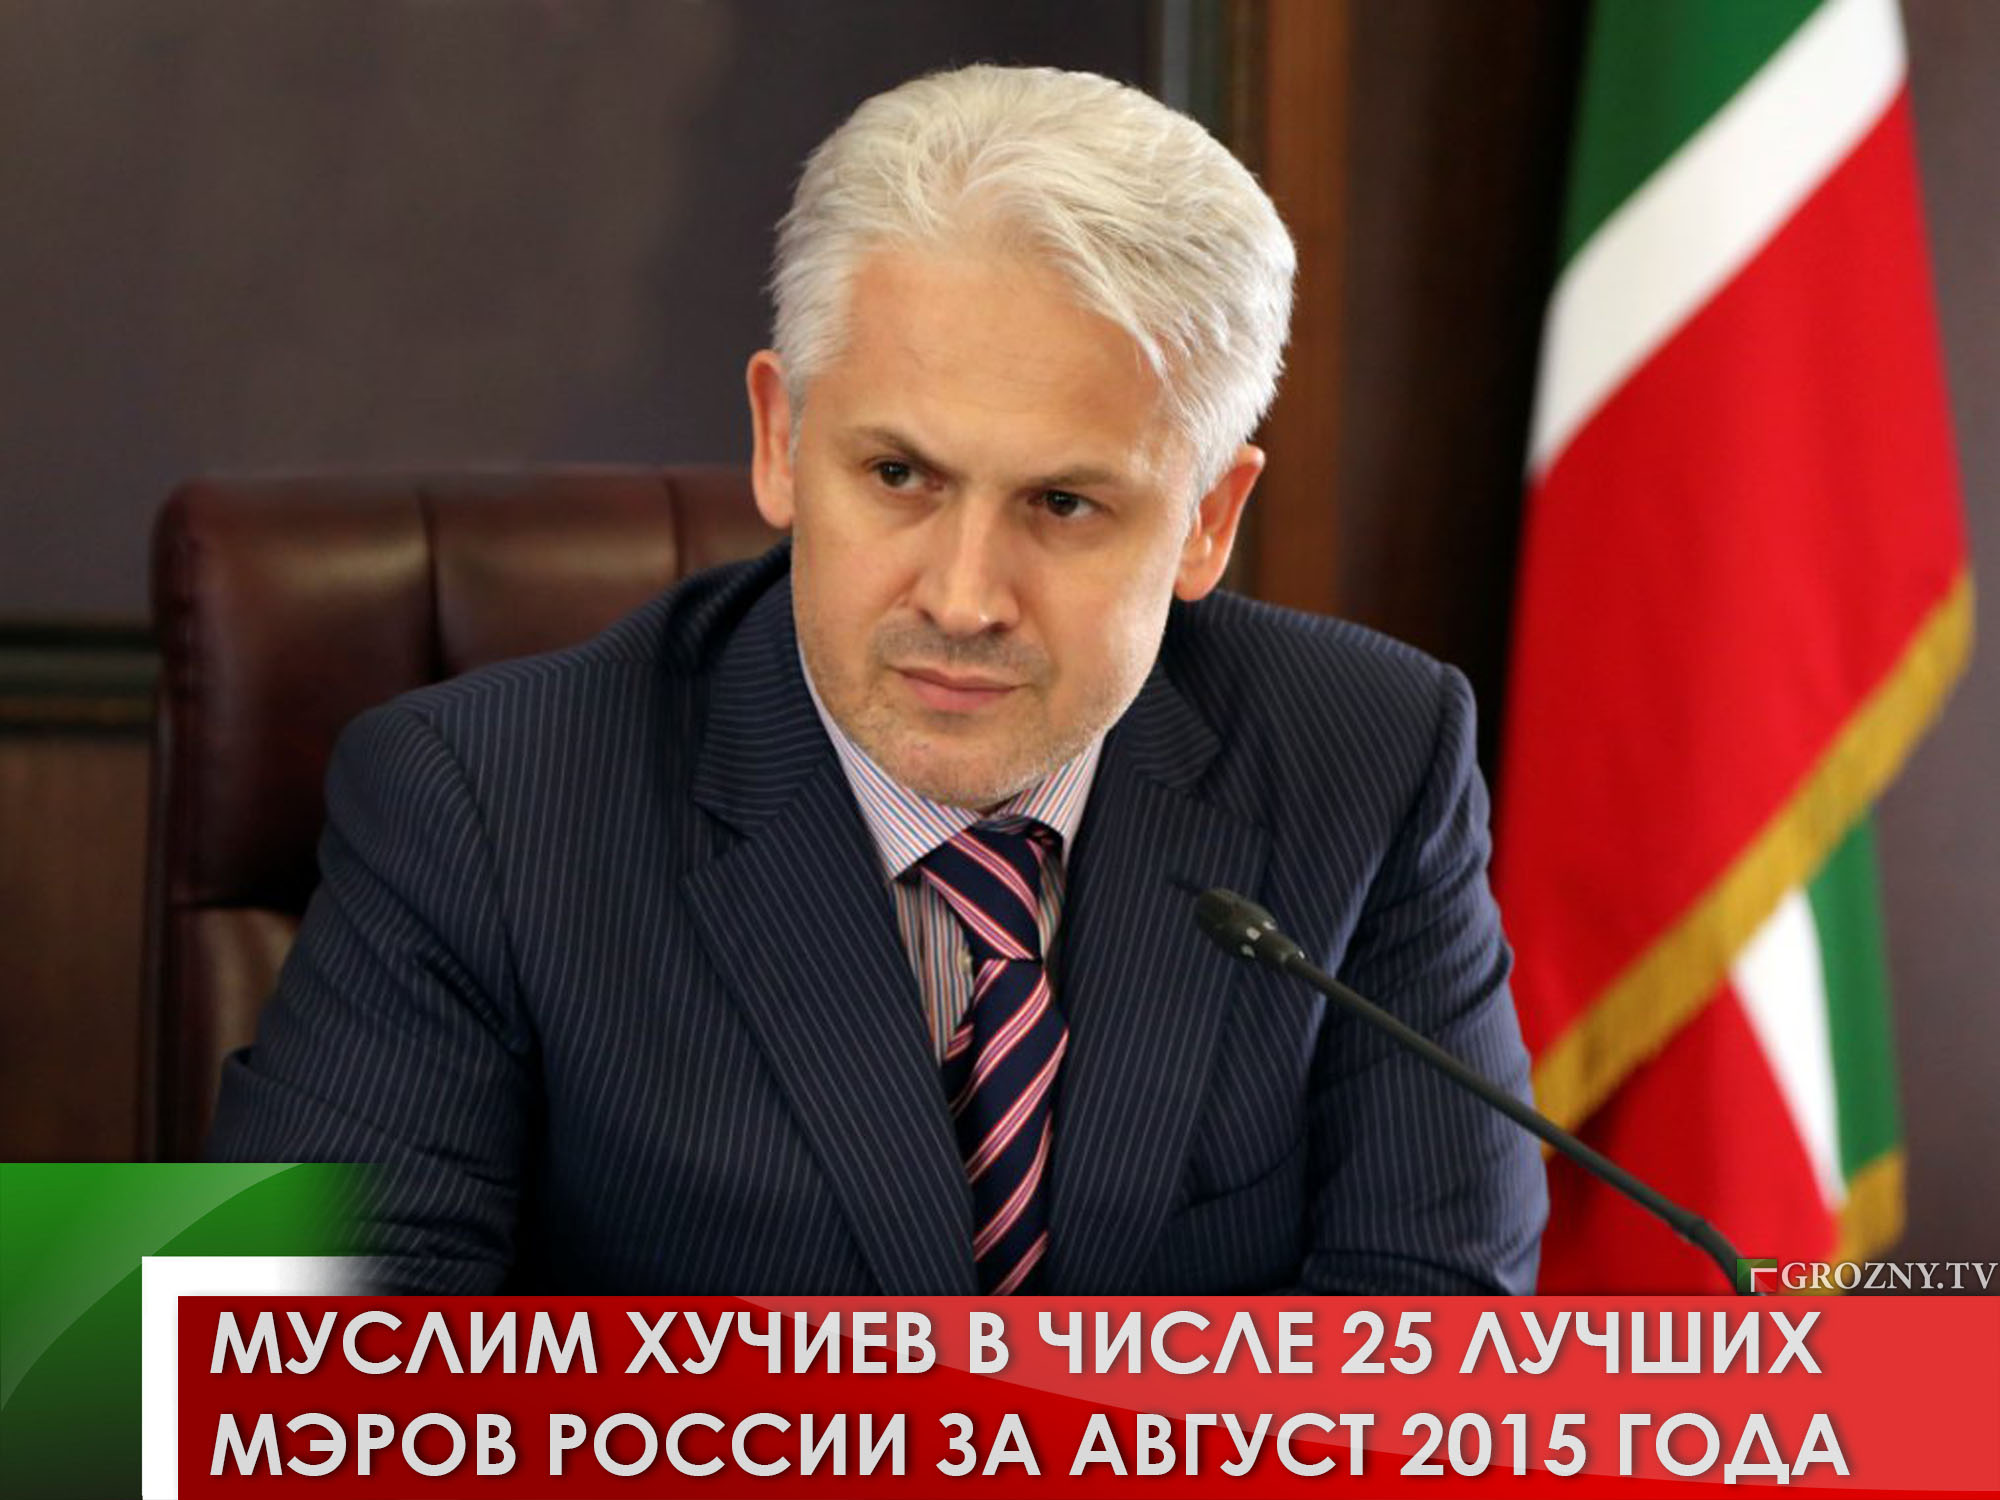 Муслим Хучиев в числе 25 лучших мэров России за август 2015 года